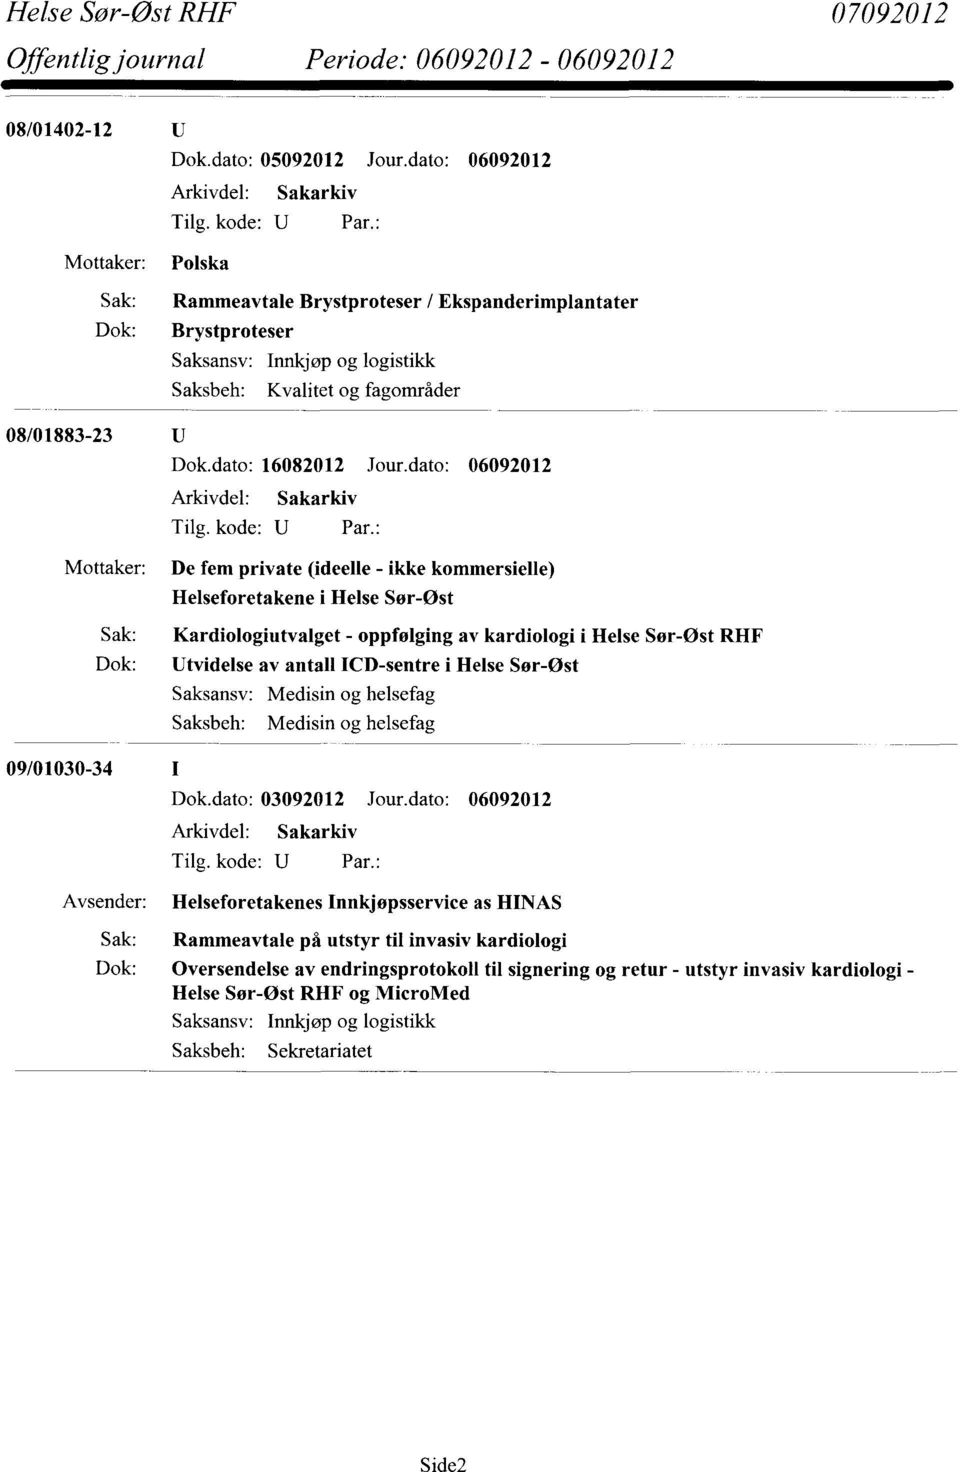 i Helse Sør-Øst Saksansv: Medisin og helsefag Saksbeh: Medisin og helsefag 09/01030-34 Dok.dato: 03092012 Jour.